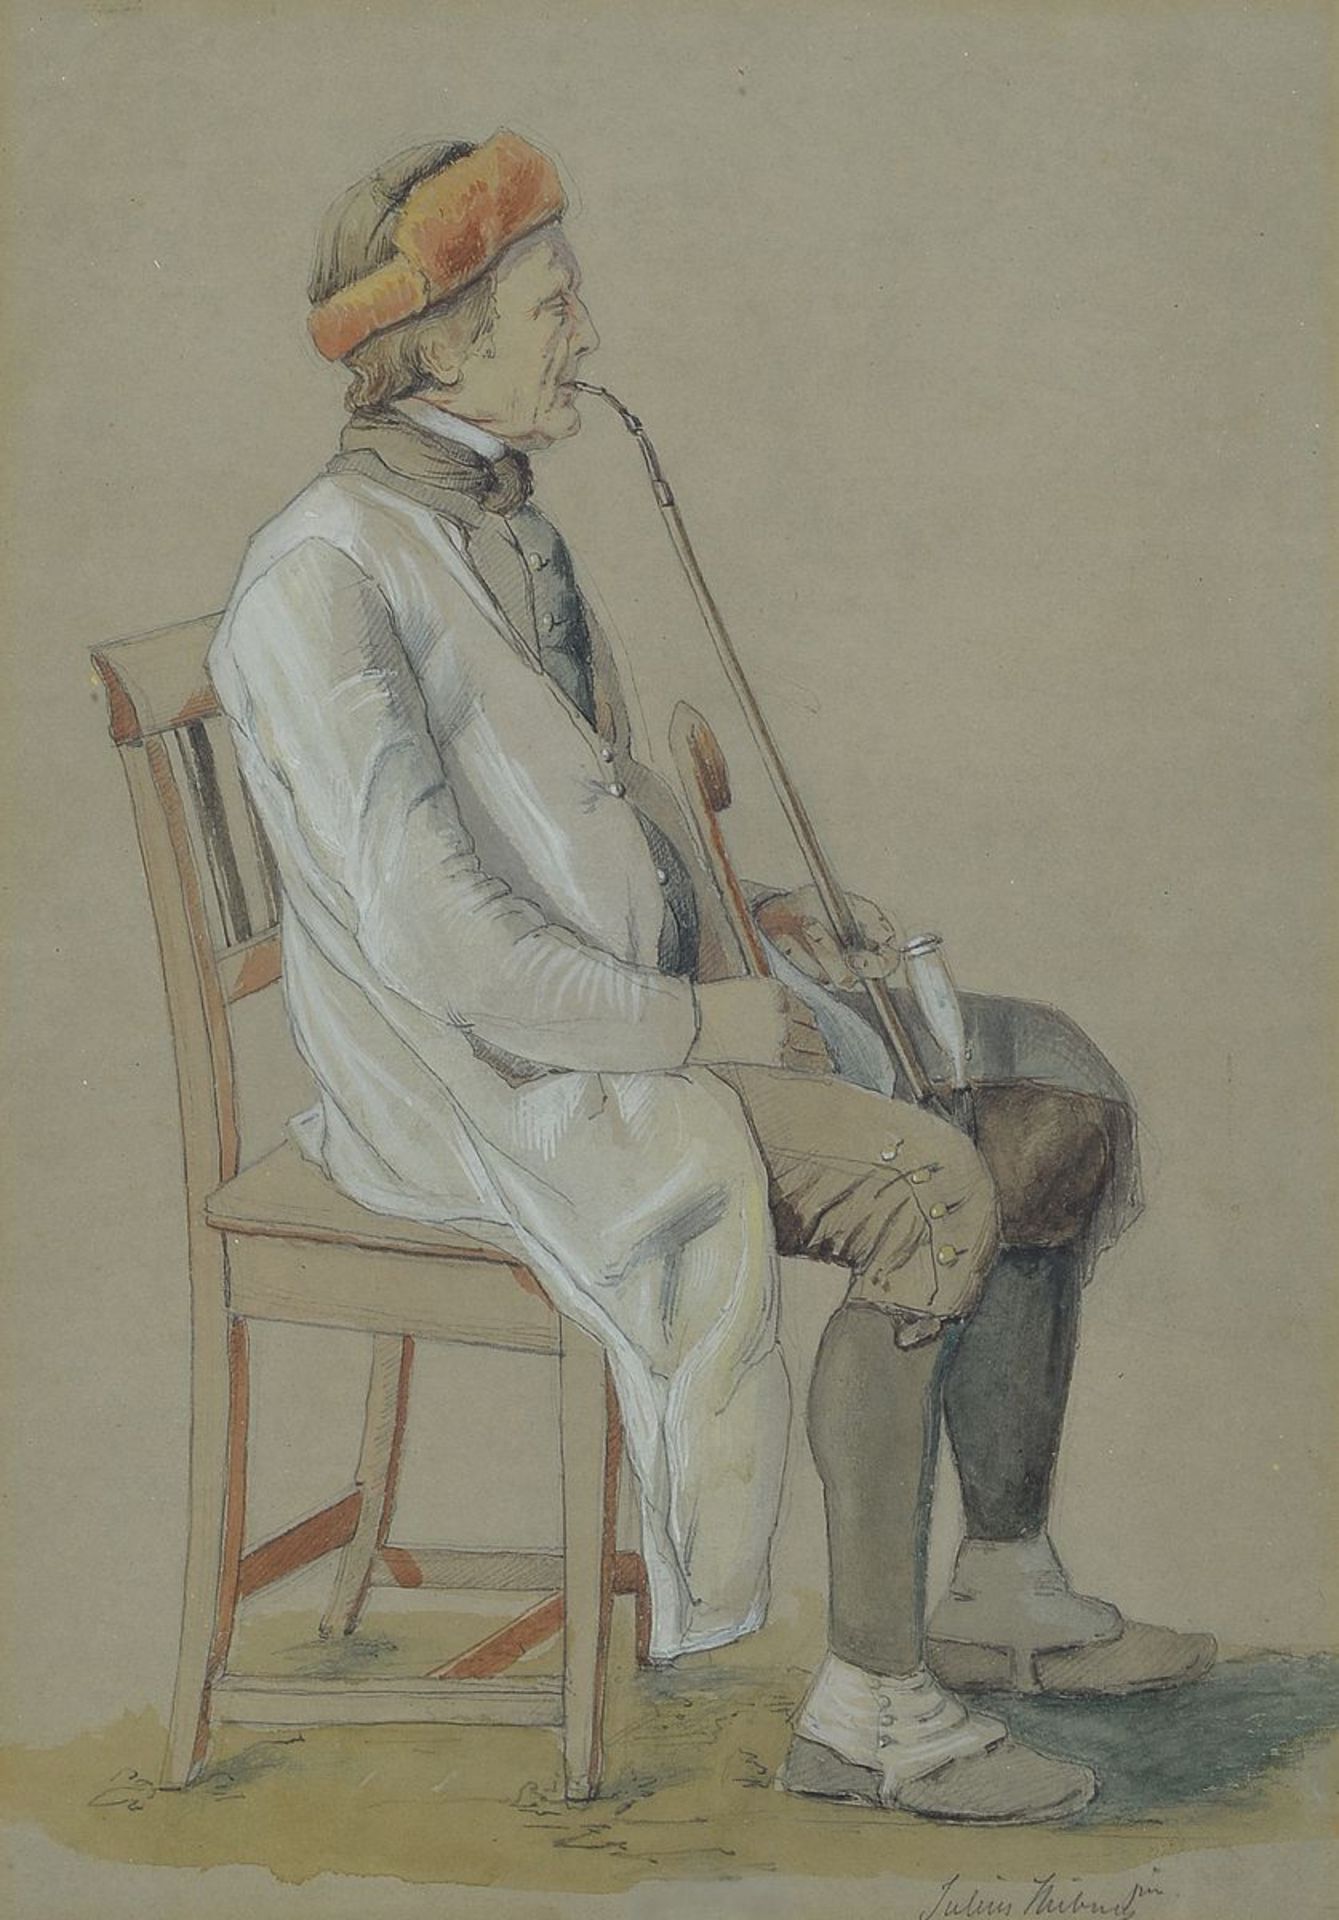 Juluis Hübner, 1806 - 1882, aquarellierte Bleistiftzeichnung, sitzender Mann mit